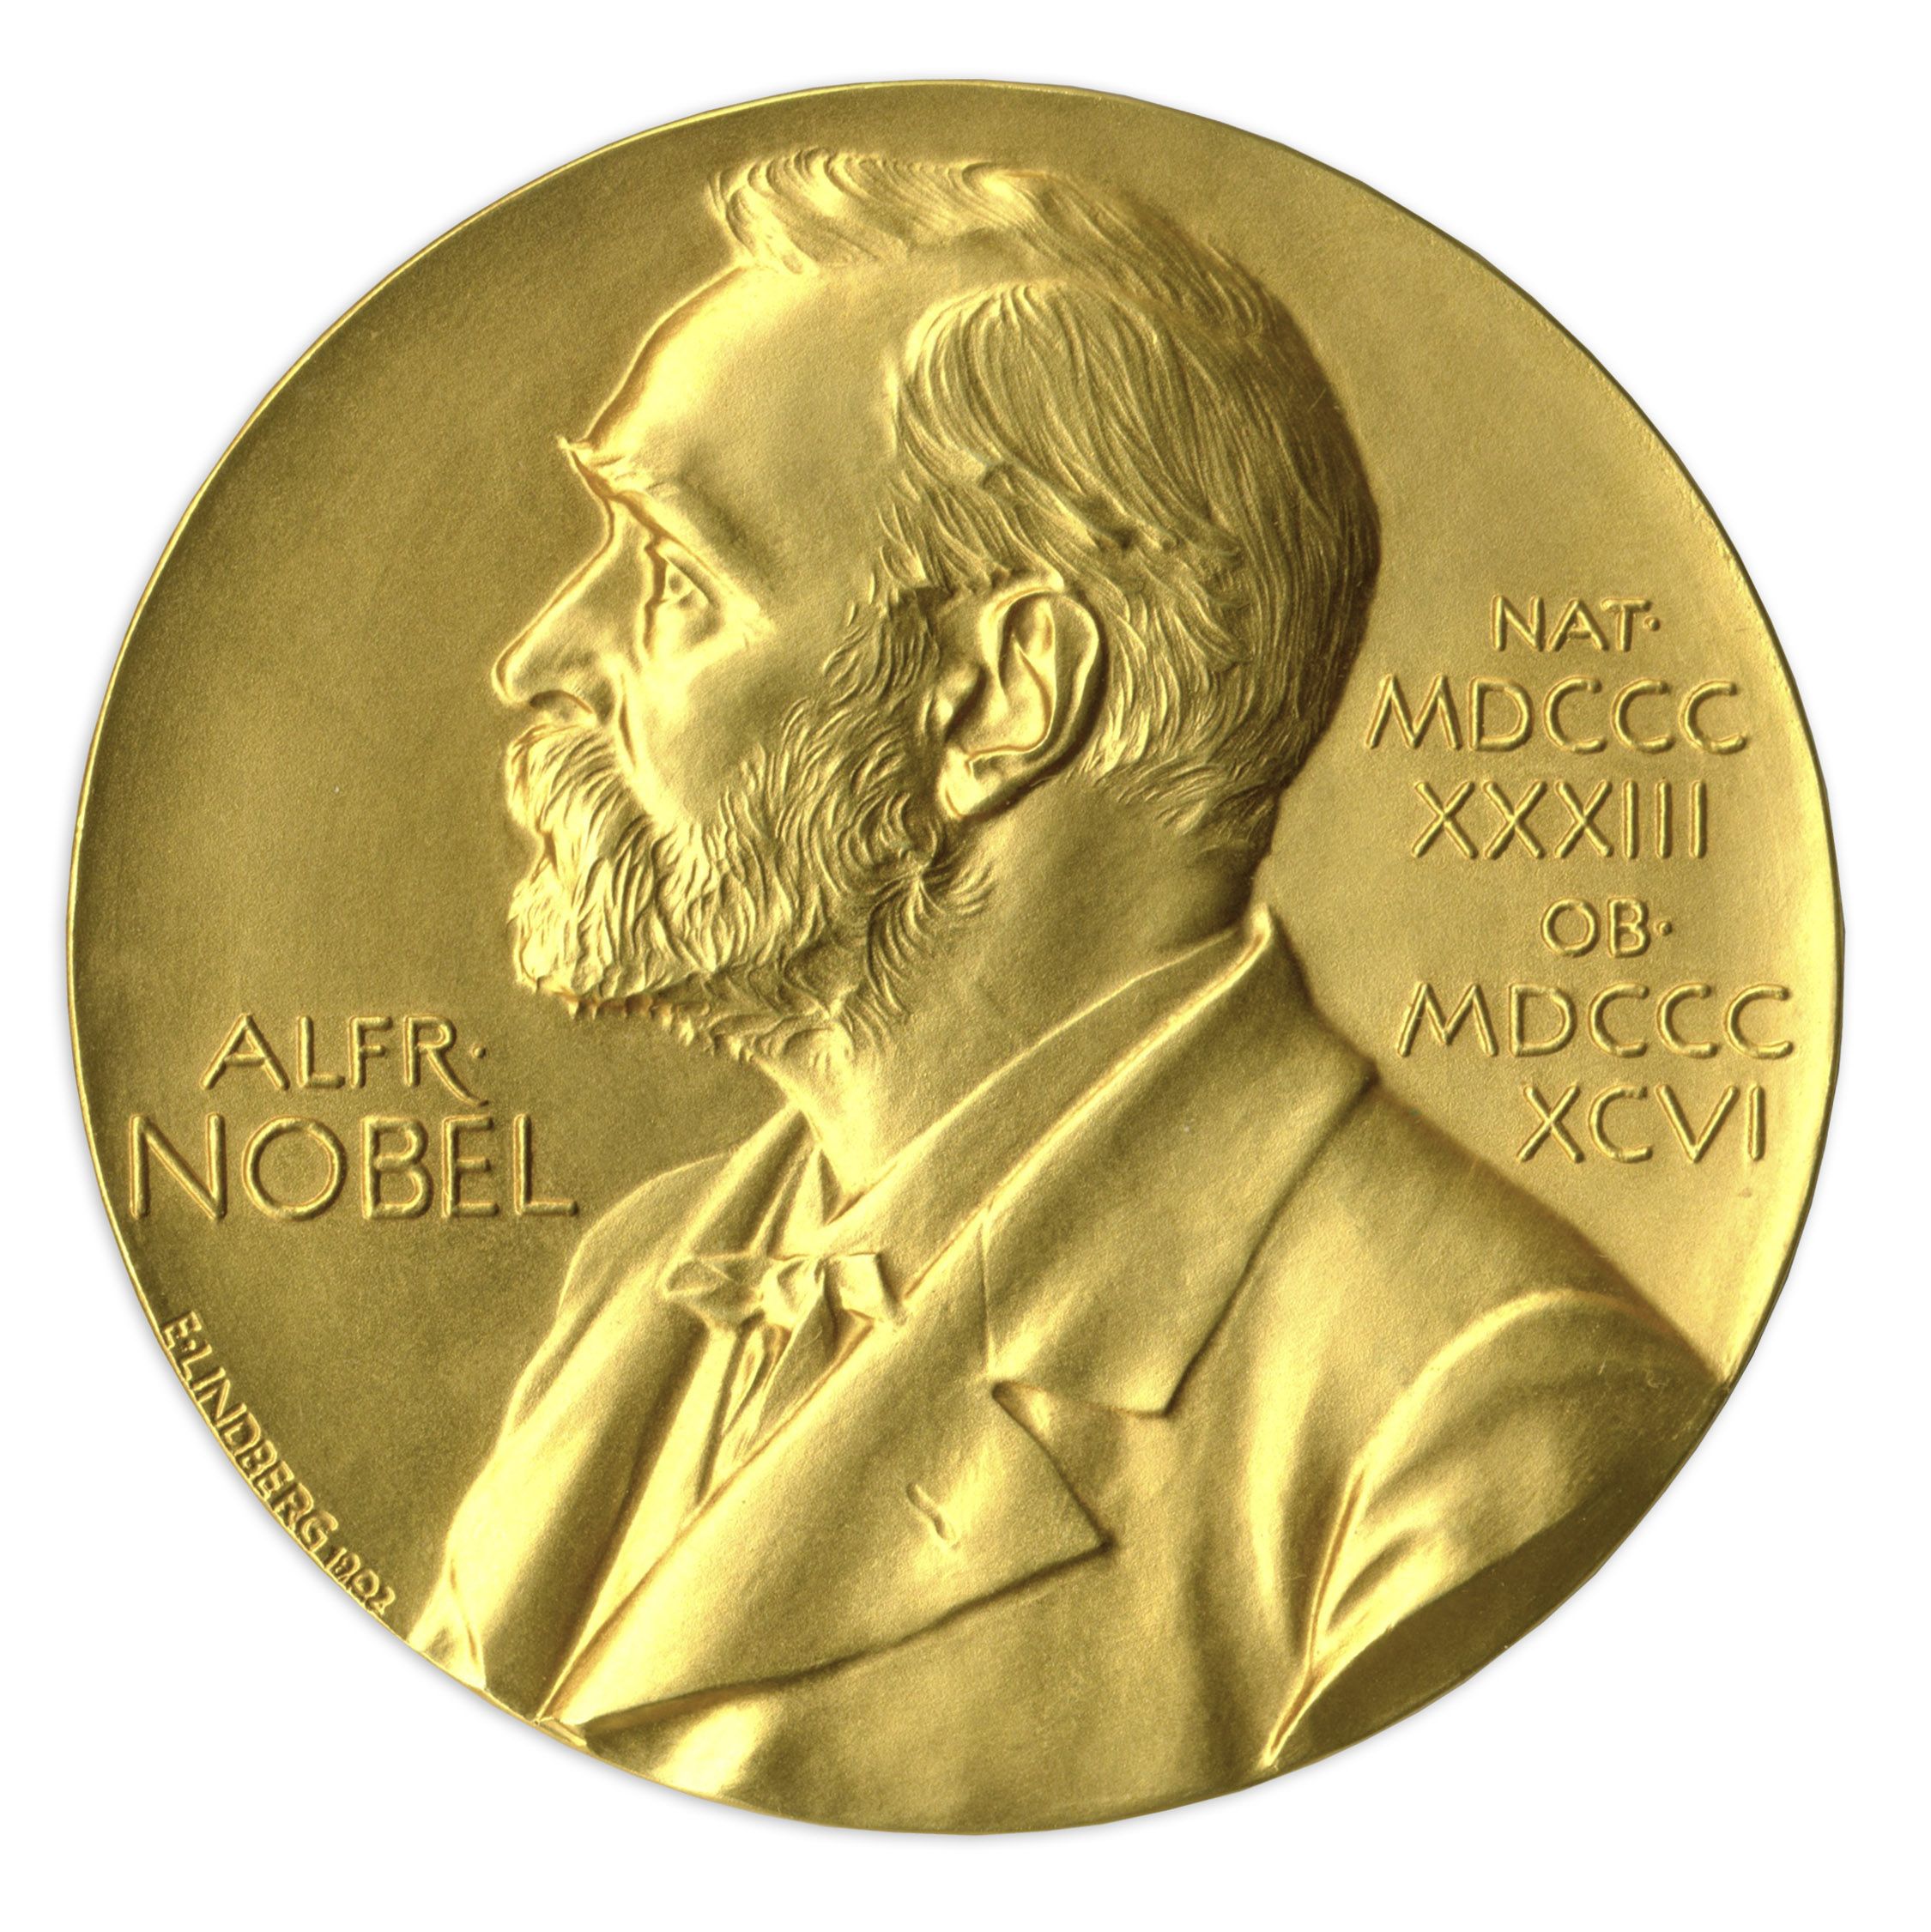 nobel prize in physics